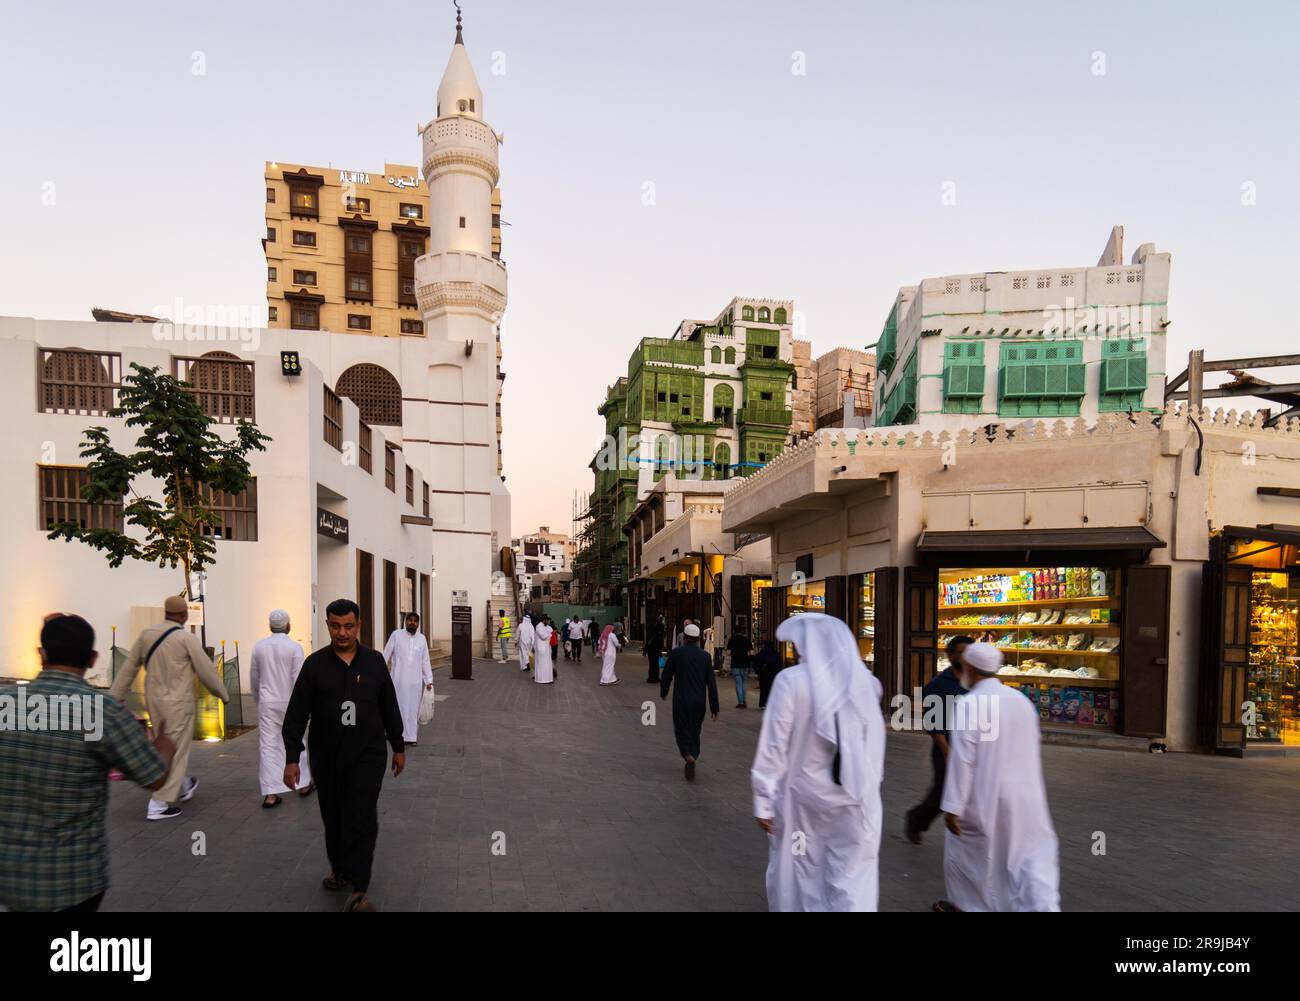 Gedda, Arabia Saudita - persone vestite con abiti tradizionali camminano davanti alla moschea al Ma'amar nella città vecchia di Gedda, al-Balad, in Arabia Saudita Foto Stock